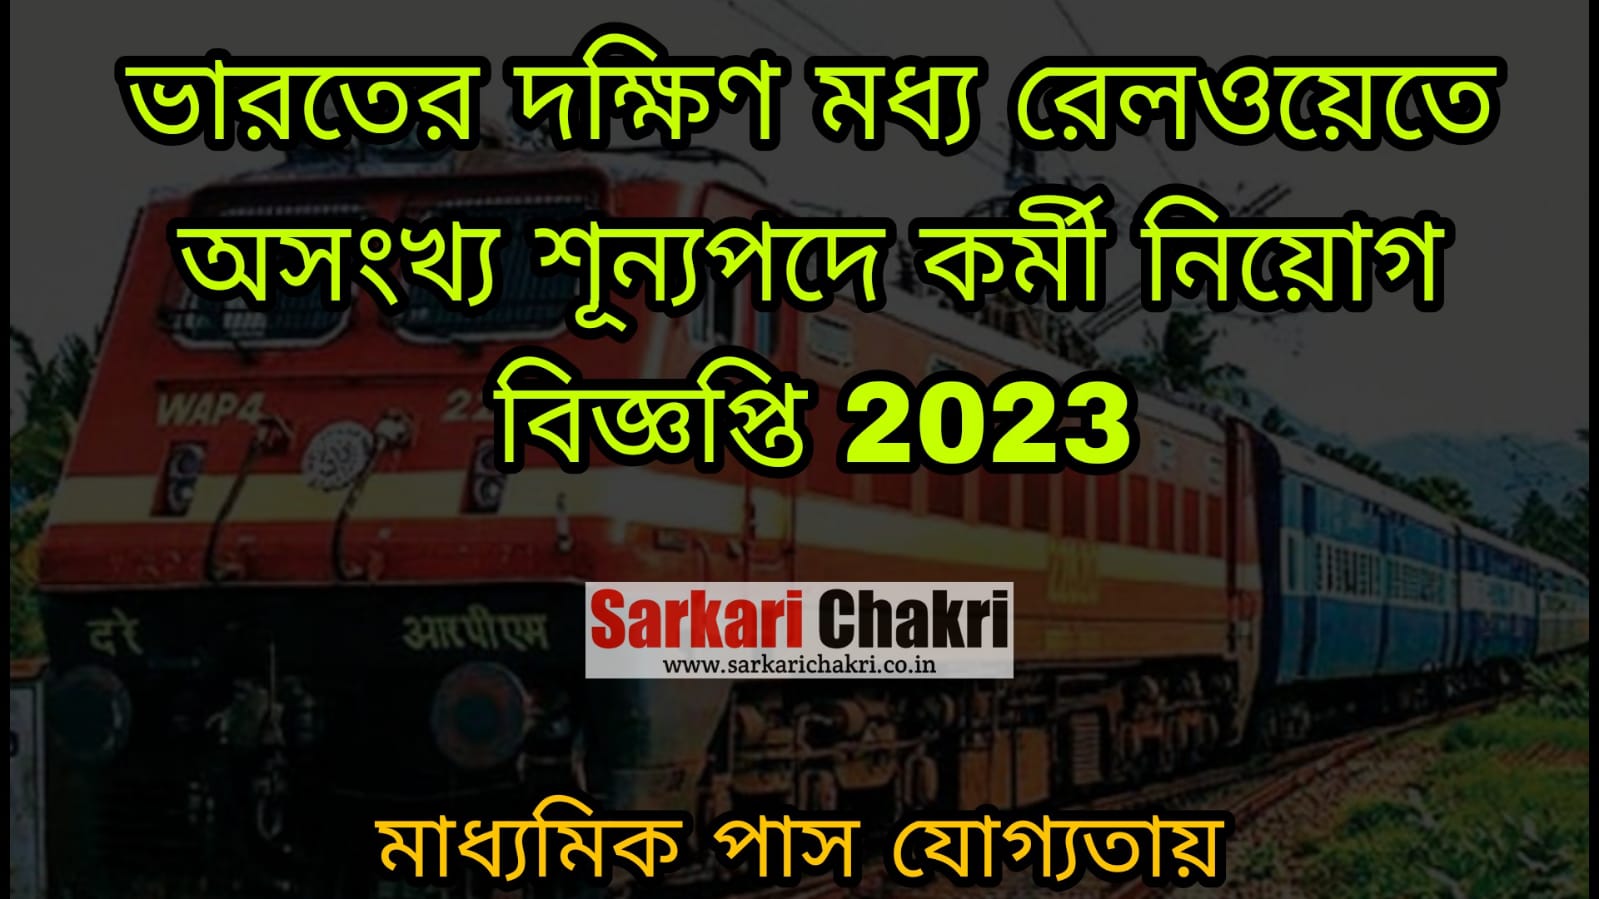 ভারতীয় দক্ষিণ মধ্য রেলওয়েত প্রচুর শূন্যপদে কর্মী নিয়োগ 2023 | Indian South Central Railway Recruitment 2023